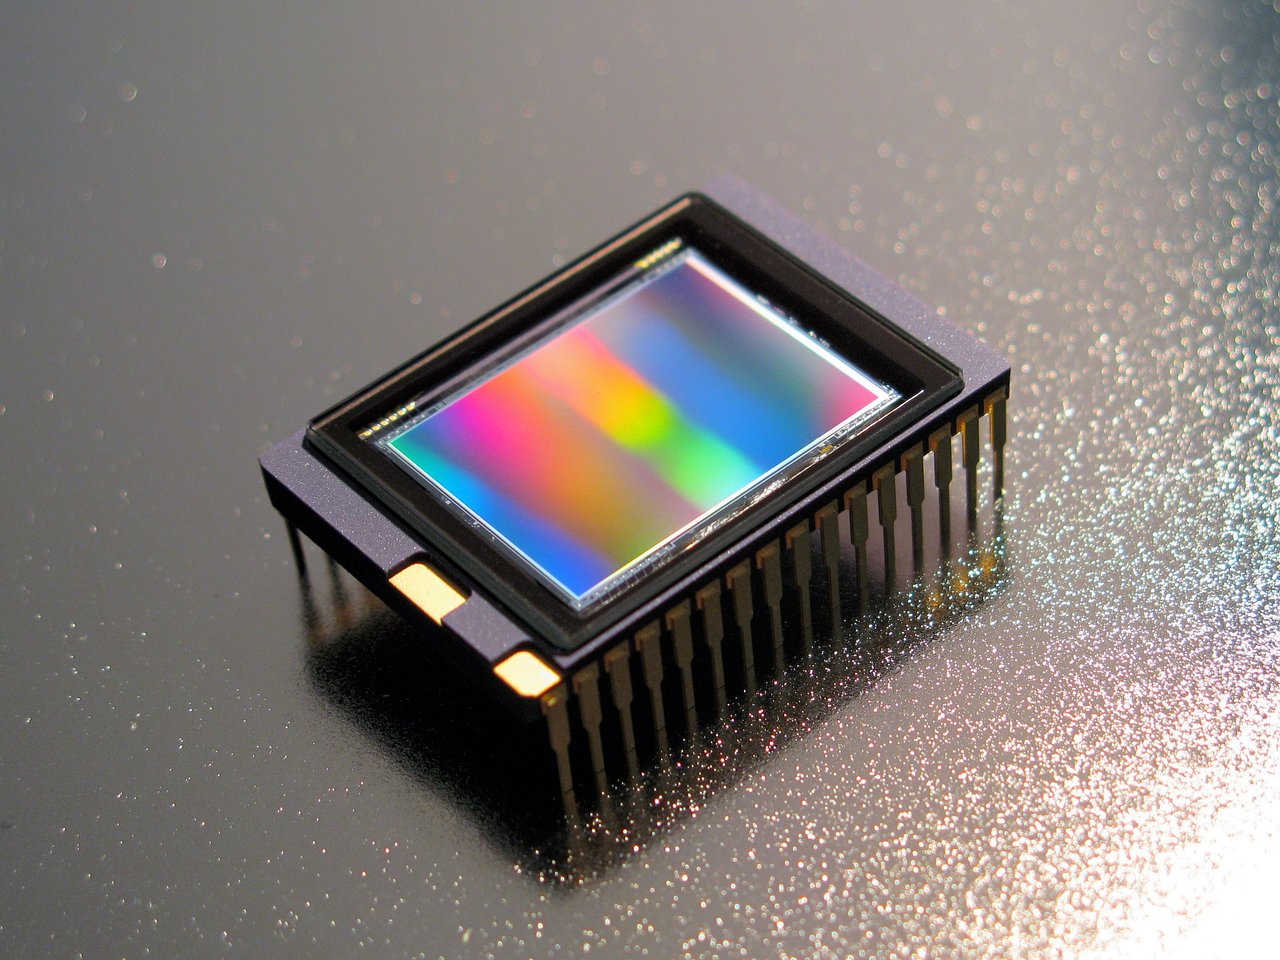 Camera chip